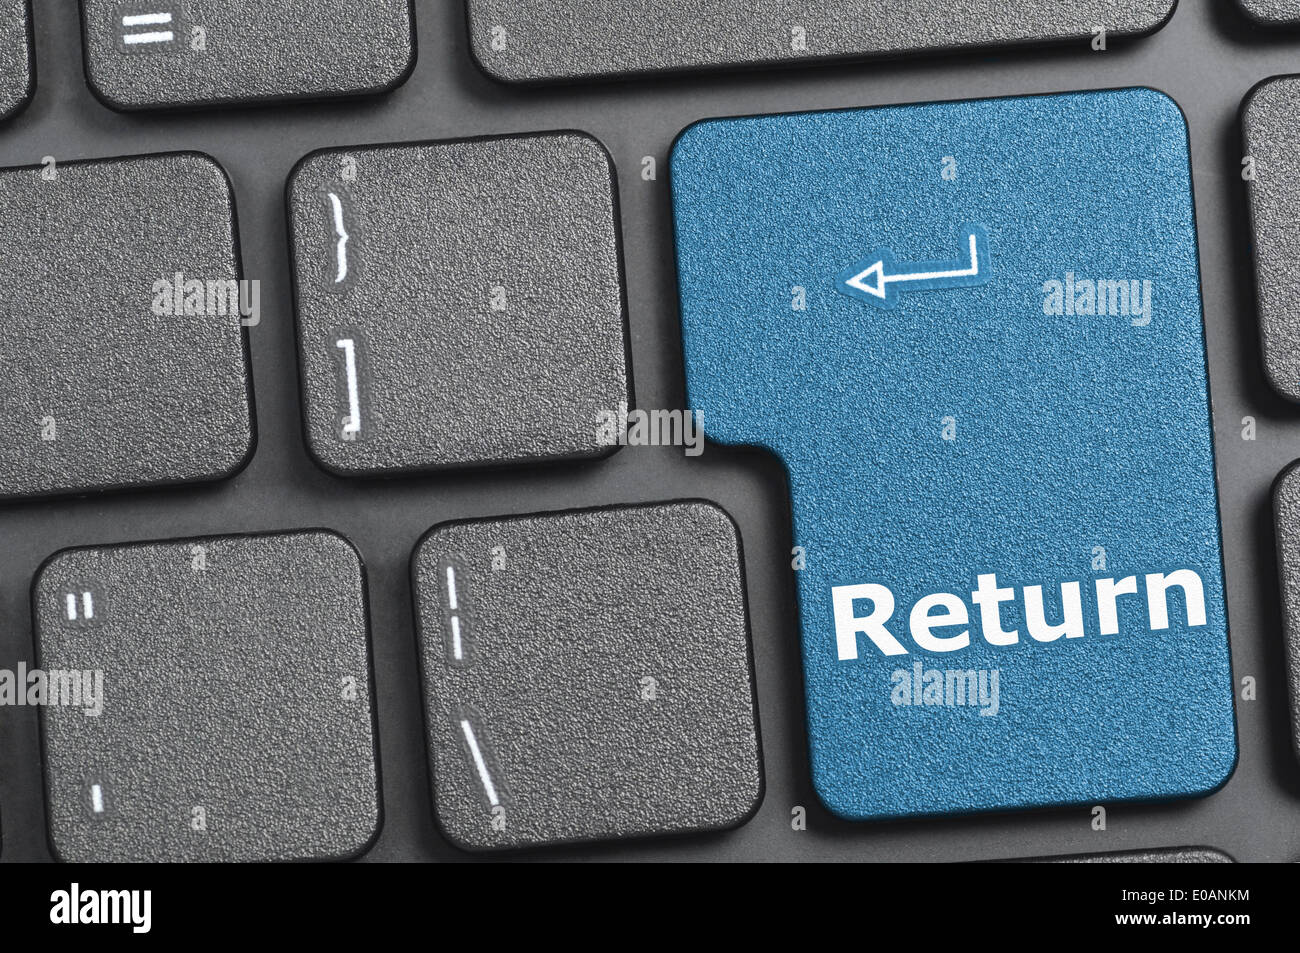 Return key immagini e fotografie stock ad alta risoluzione - Alamy